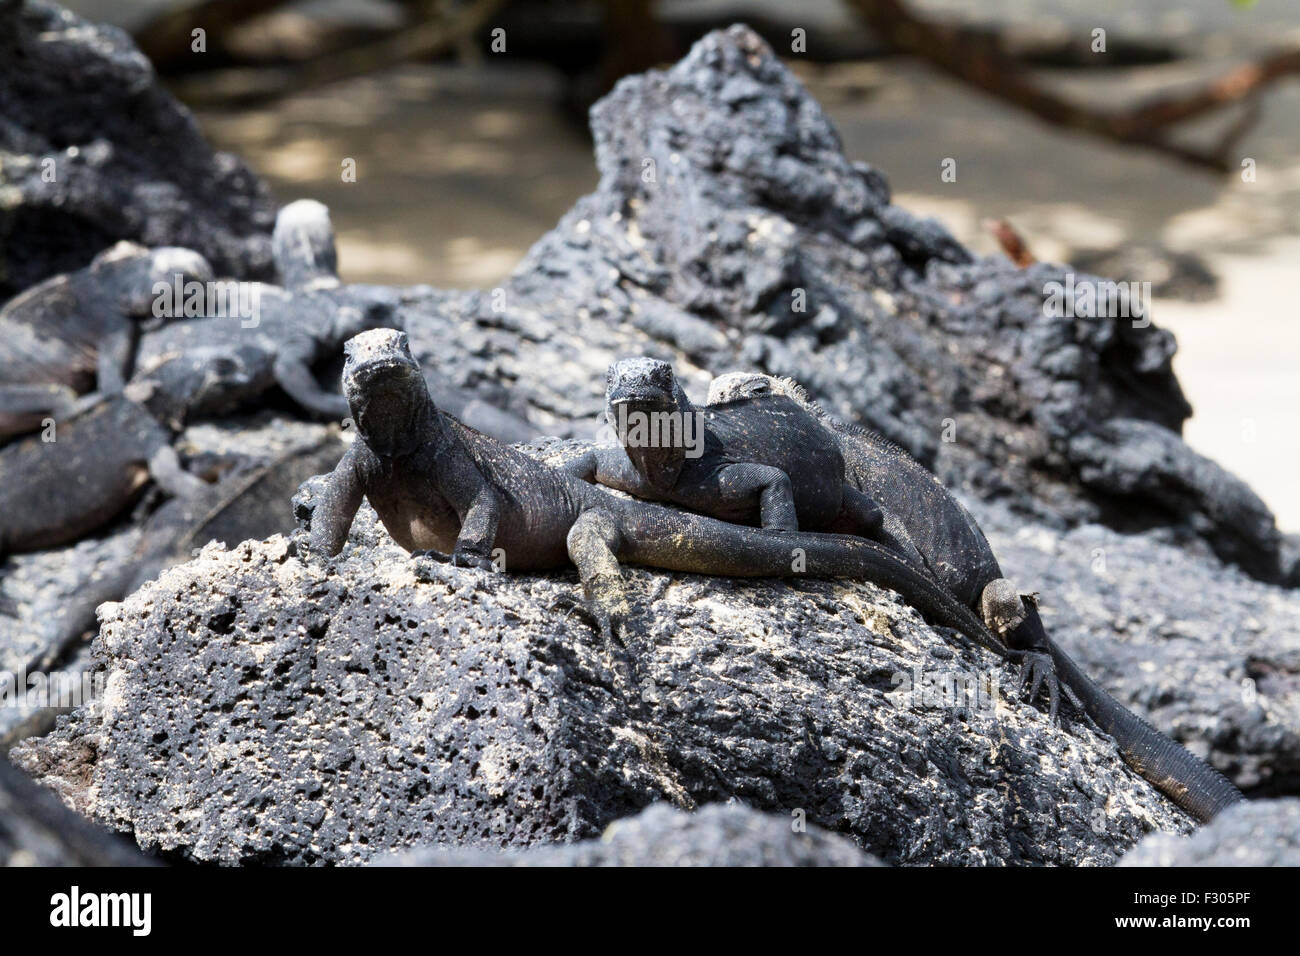 Galapagos marine iguanas on the beach, Isabela Island, Galapagos Islands Stock Photo